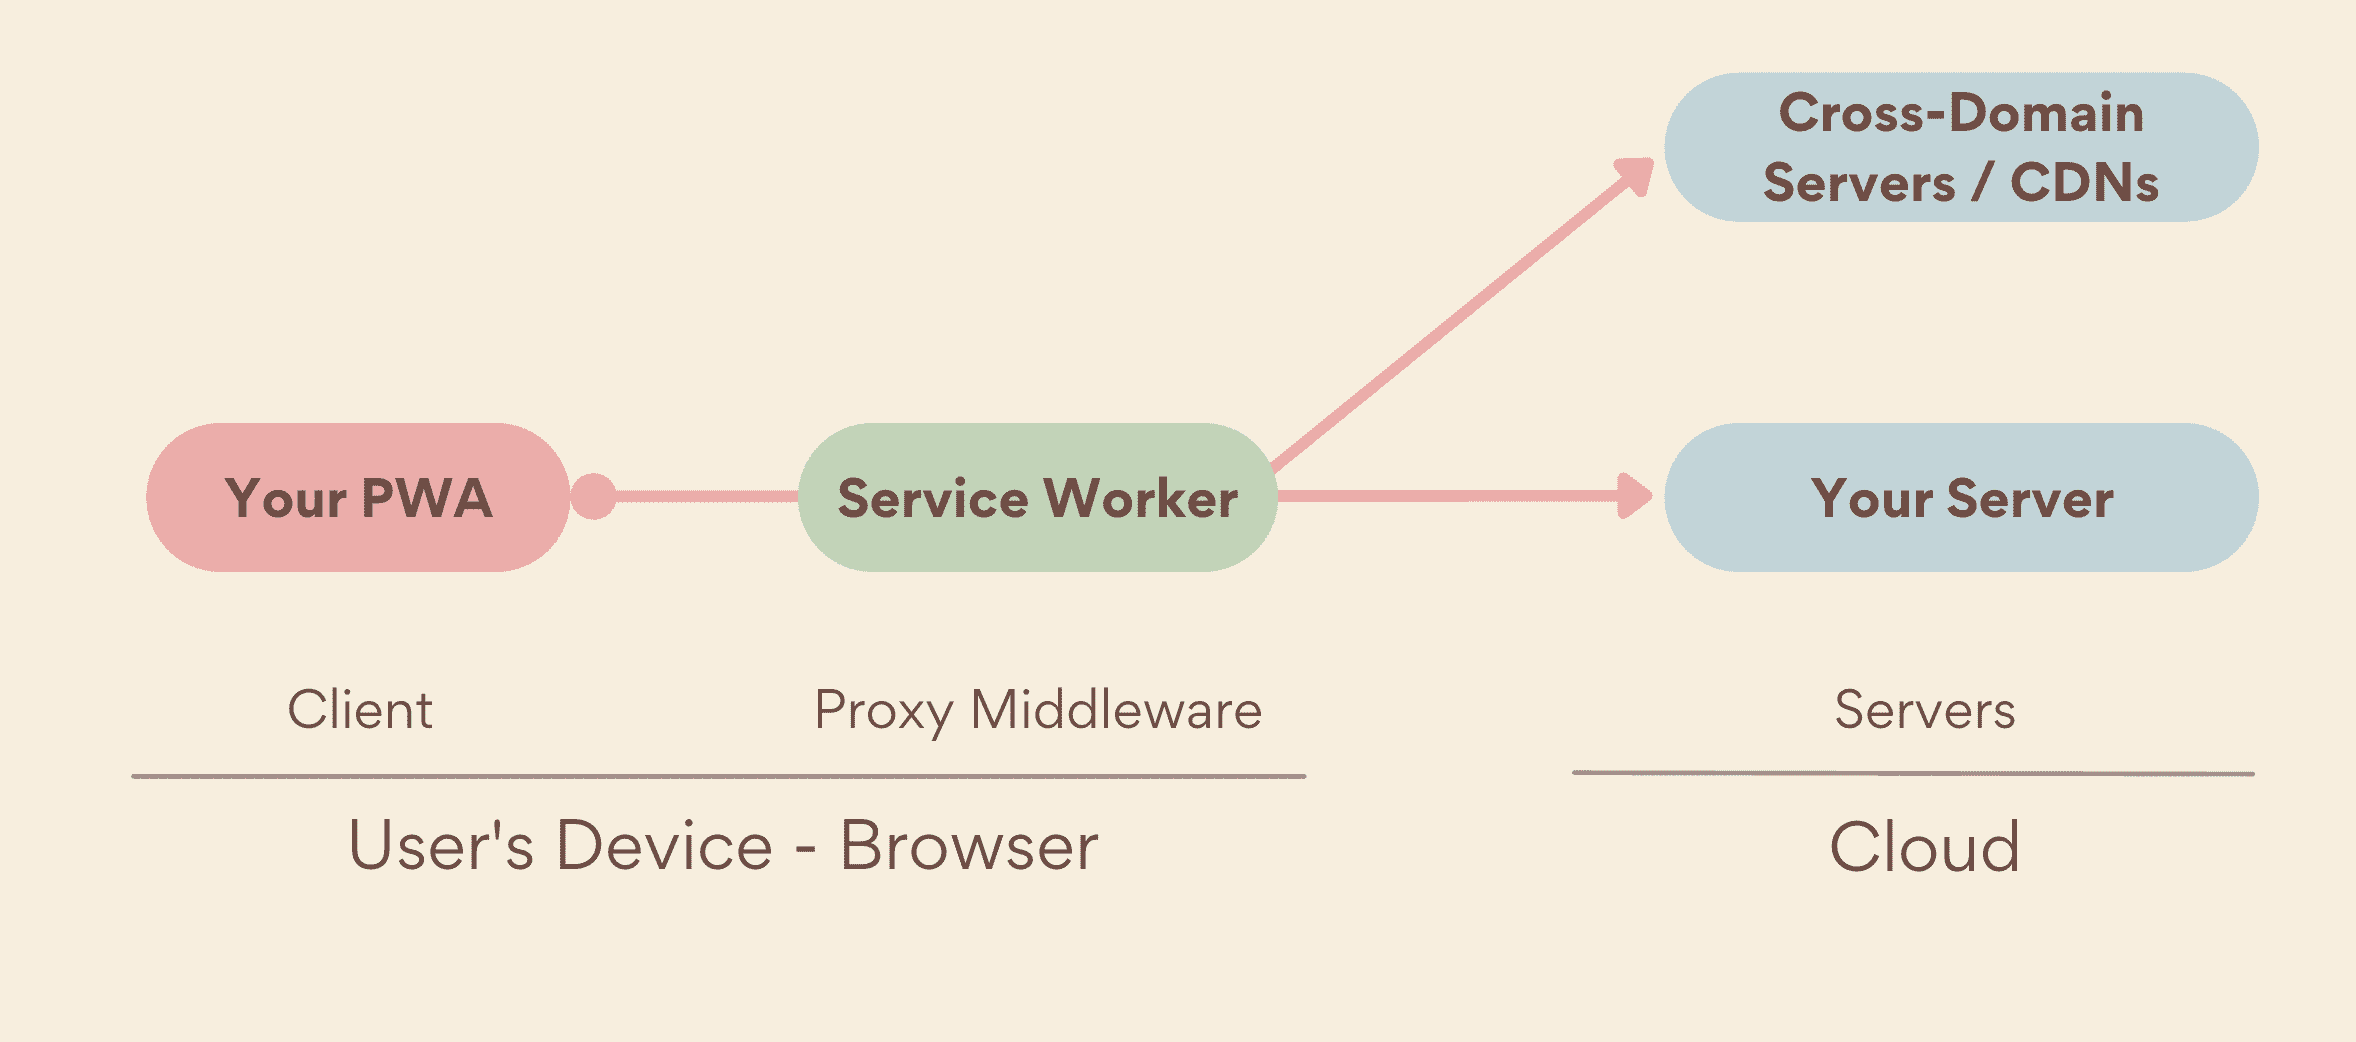 Сервисный работник в качестве прокси-сервера промежуточного программного обеспечения, работающего на стороне устройства между вашим PWA и серверами, включая как ваши собственные серверы, так и междоменные серверы.